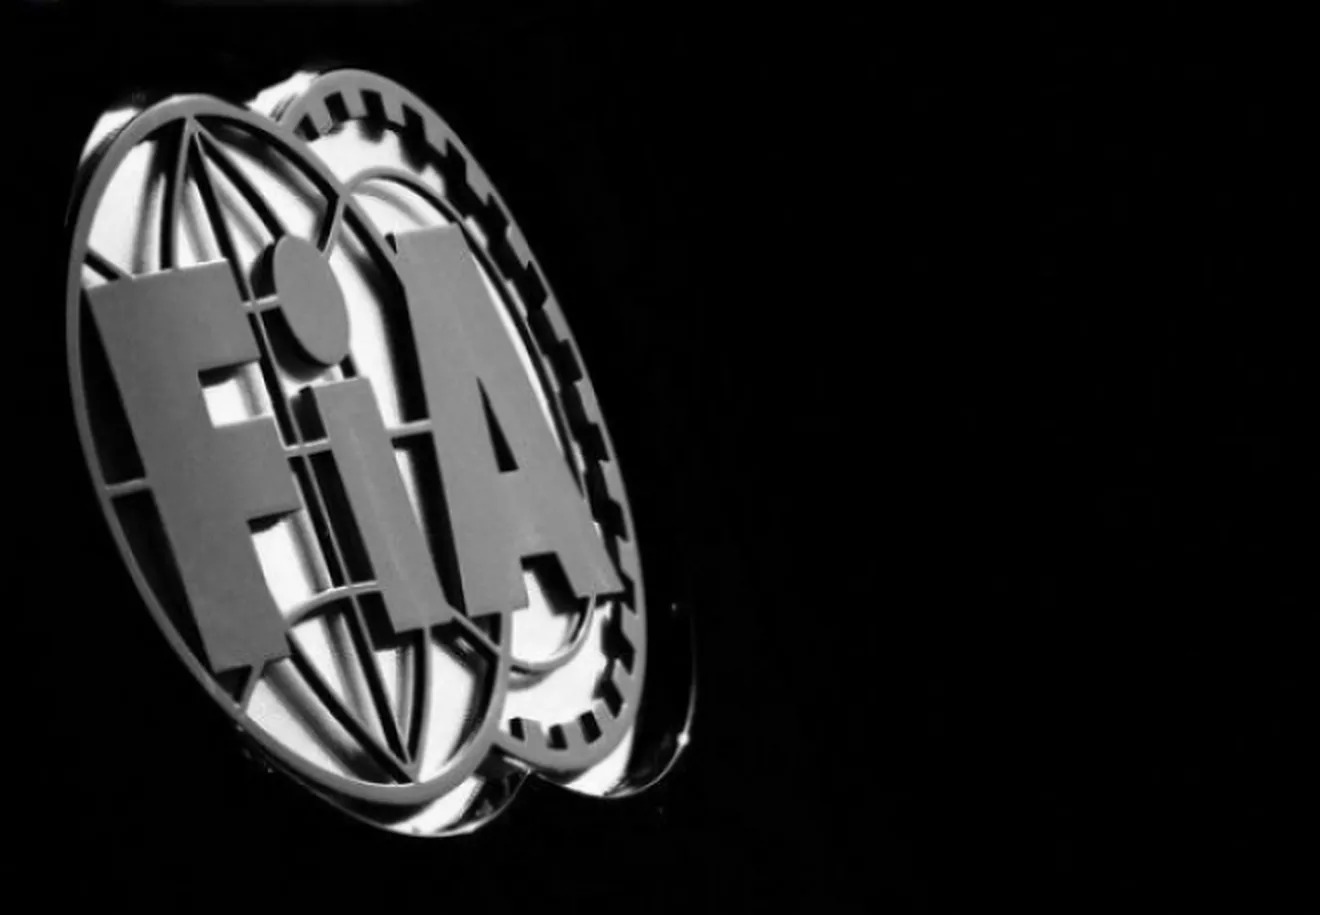 Miembros de la FIA utilizan su rango para apoyar la campaña de Todt